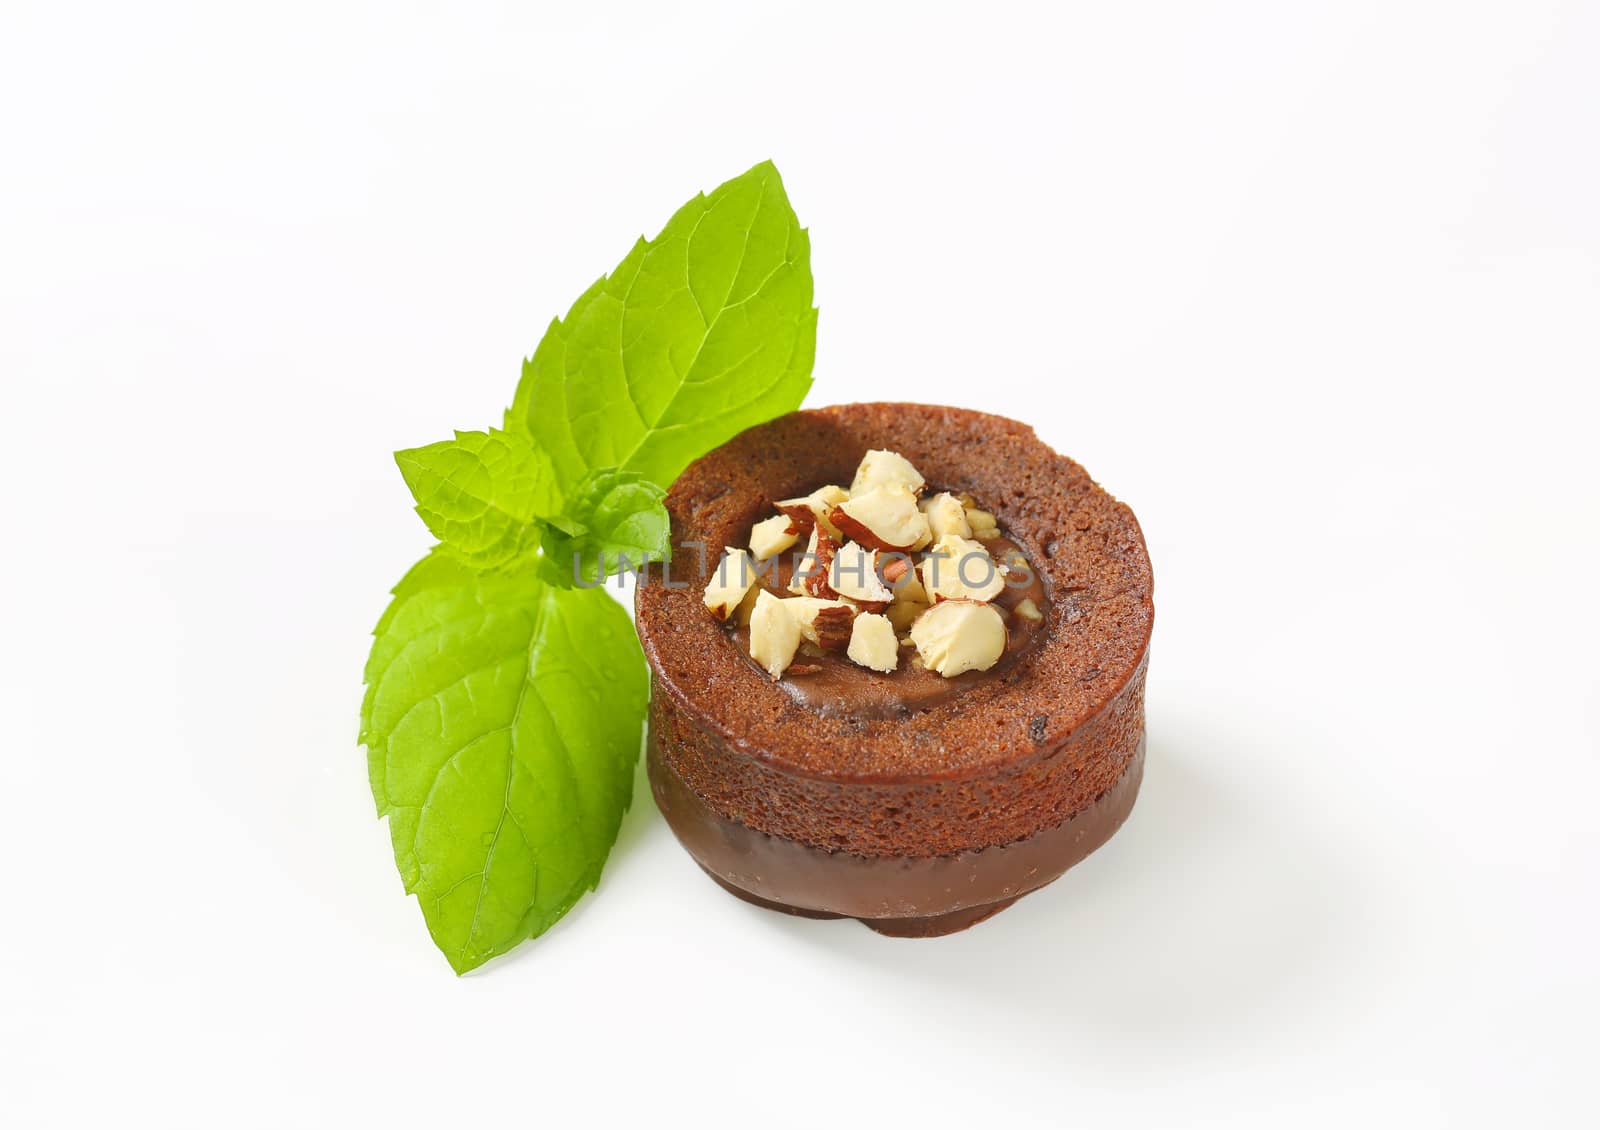 Mini chocolate hazelnut cake by Digifoodstock